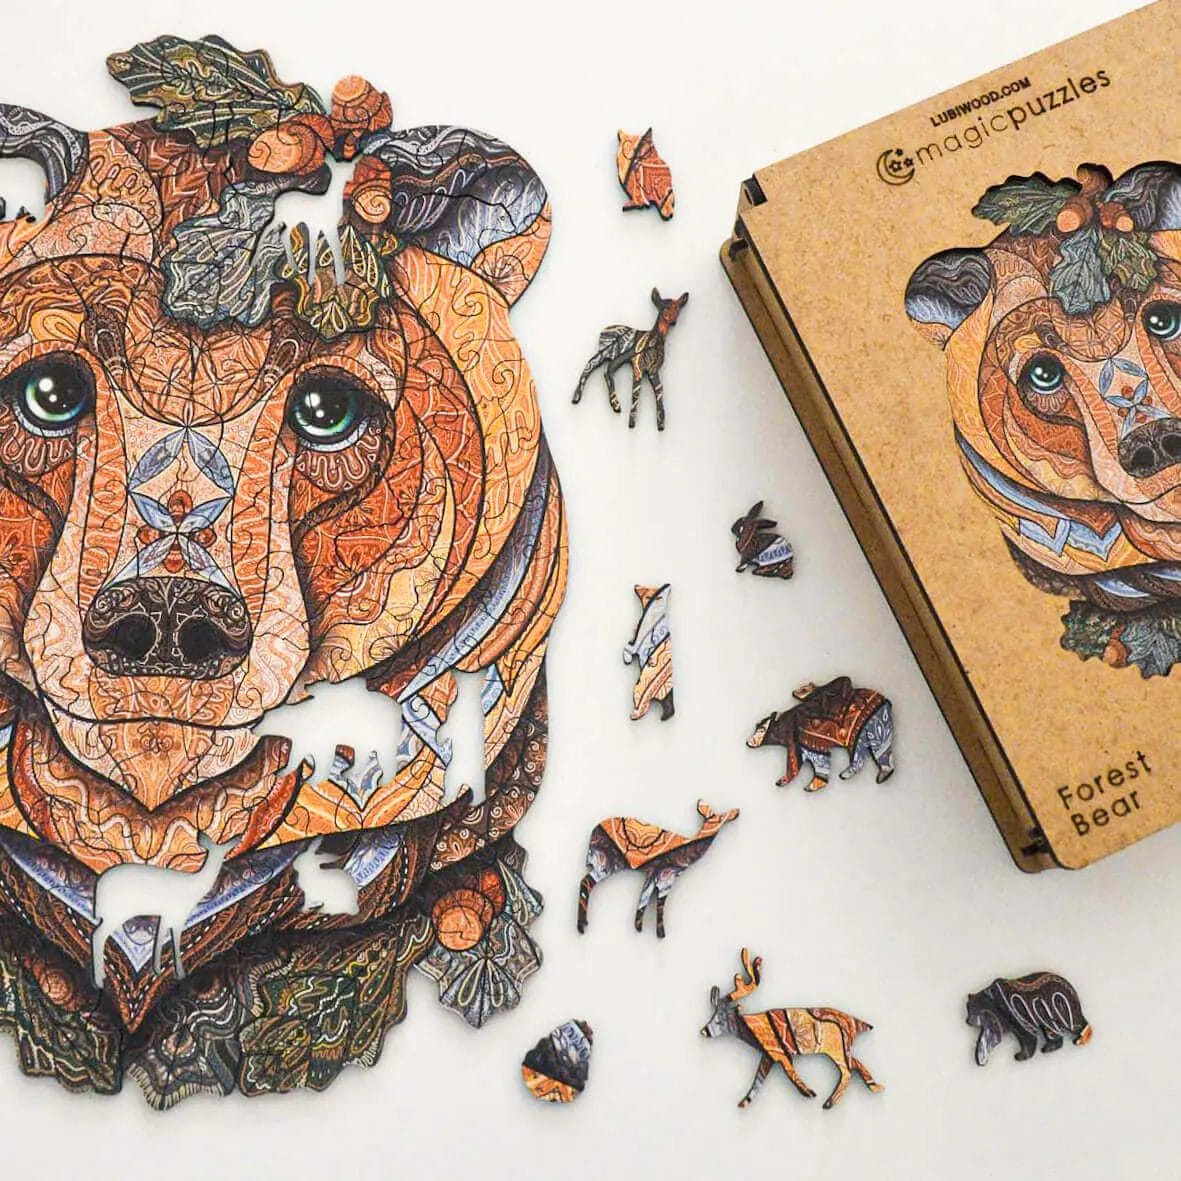 Ours en bois famille Puzzle cadeaux Art en bois Puzzle ours en